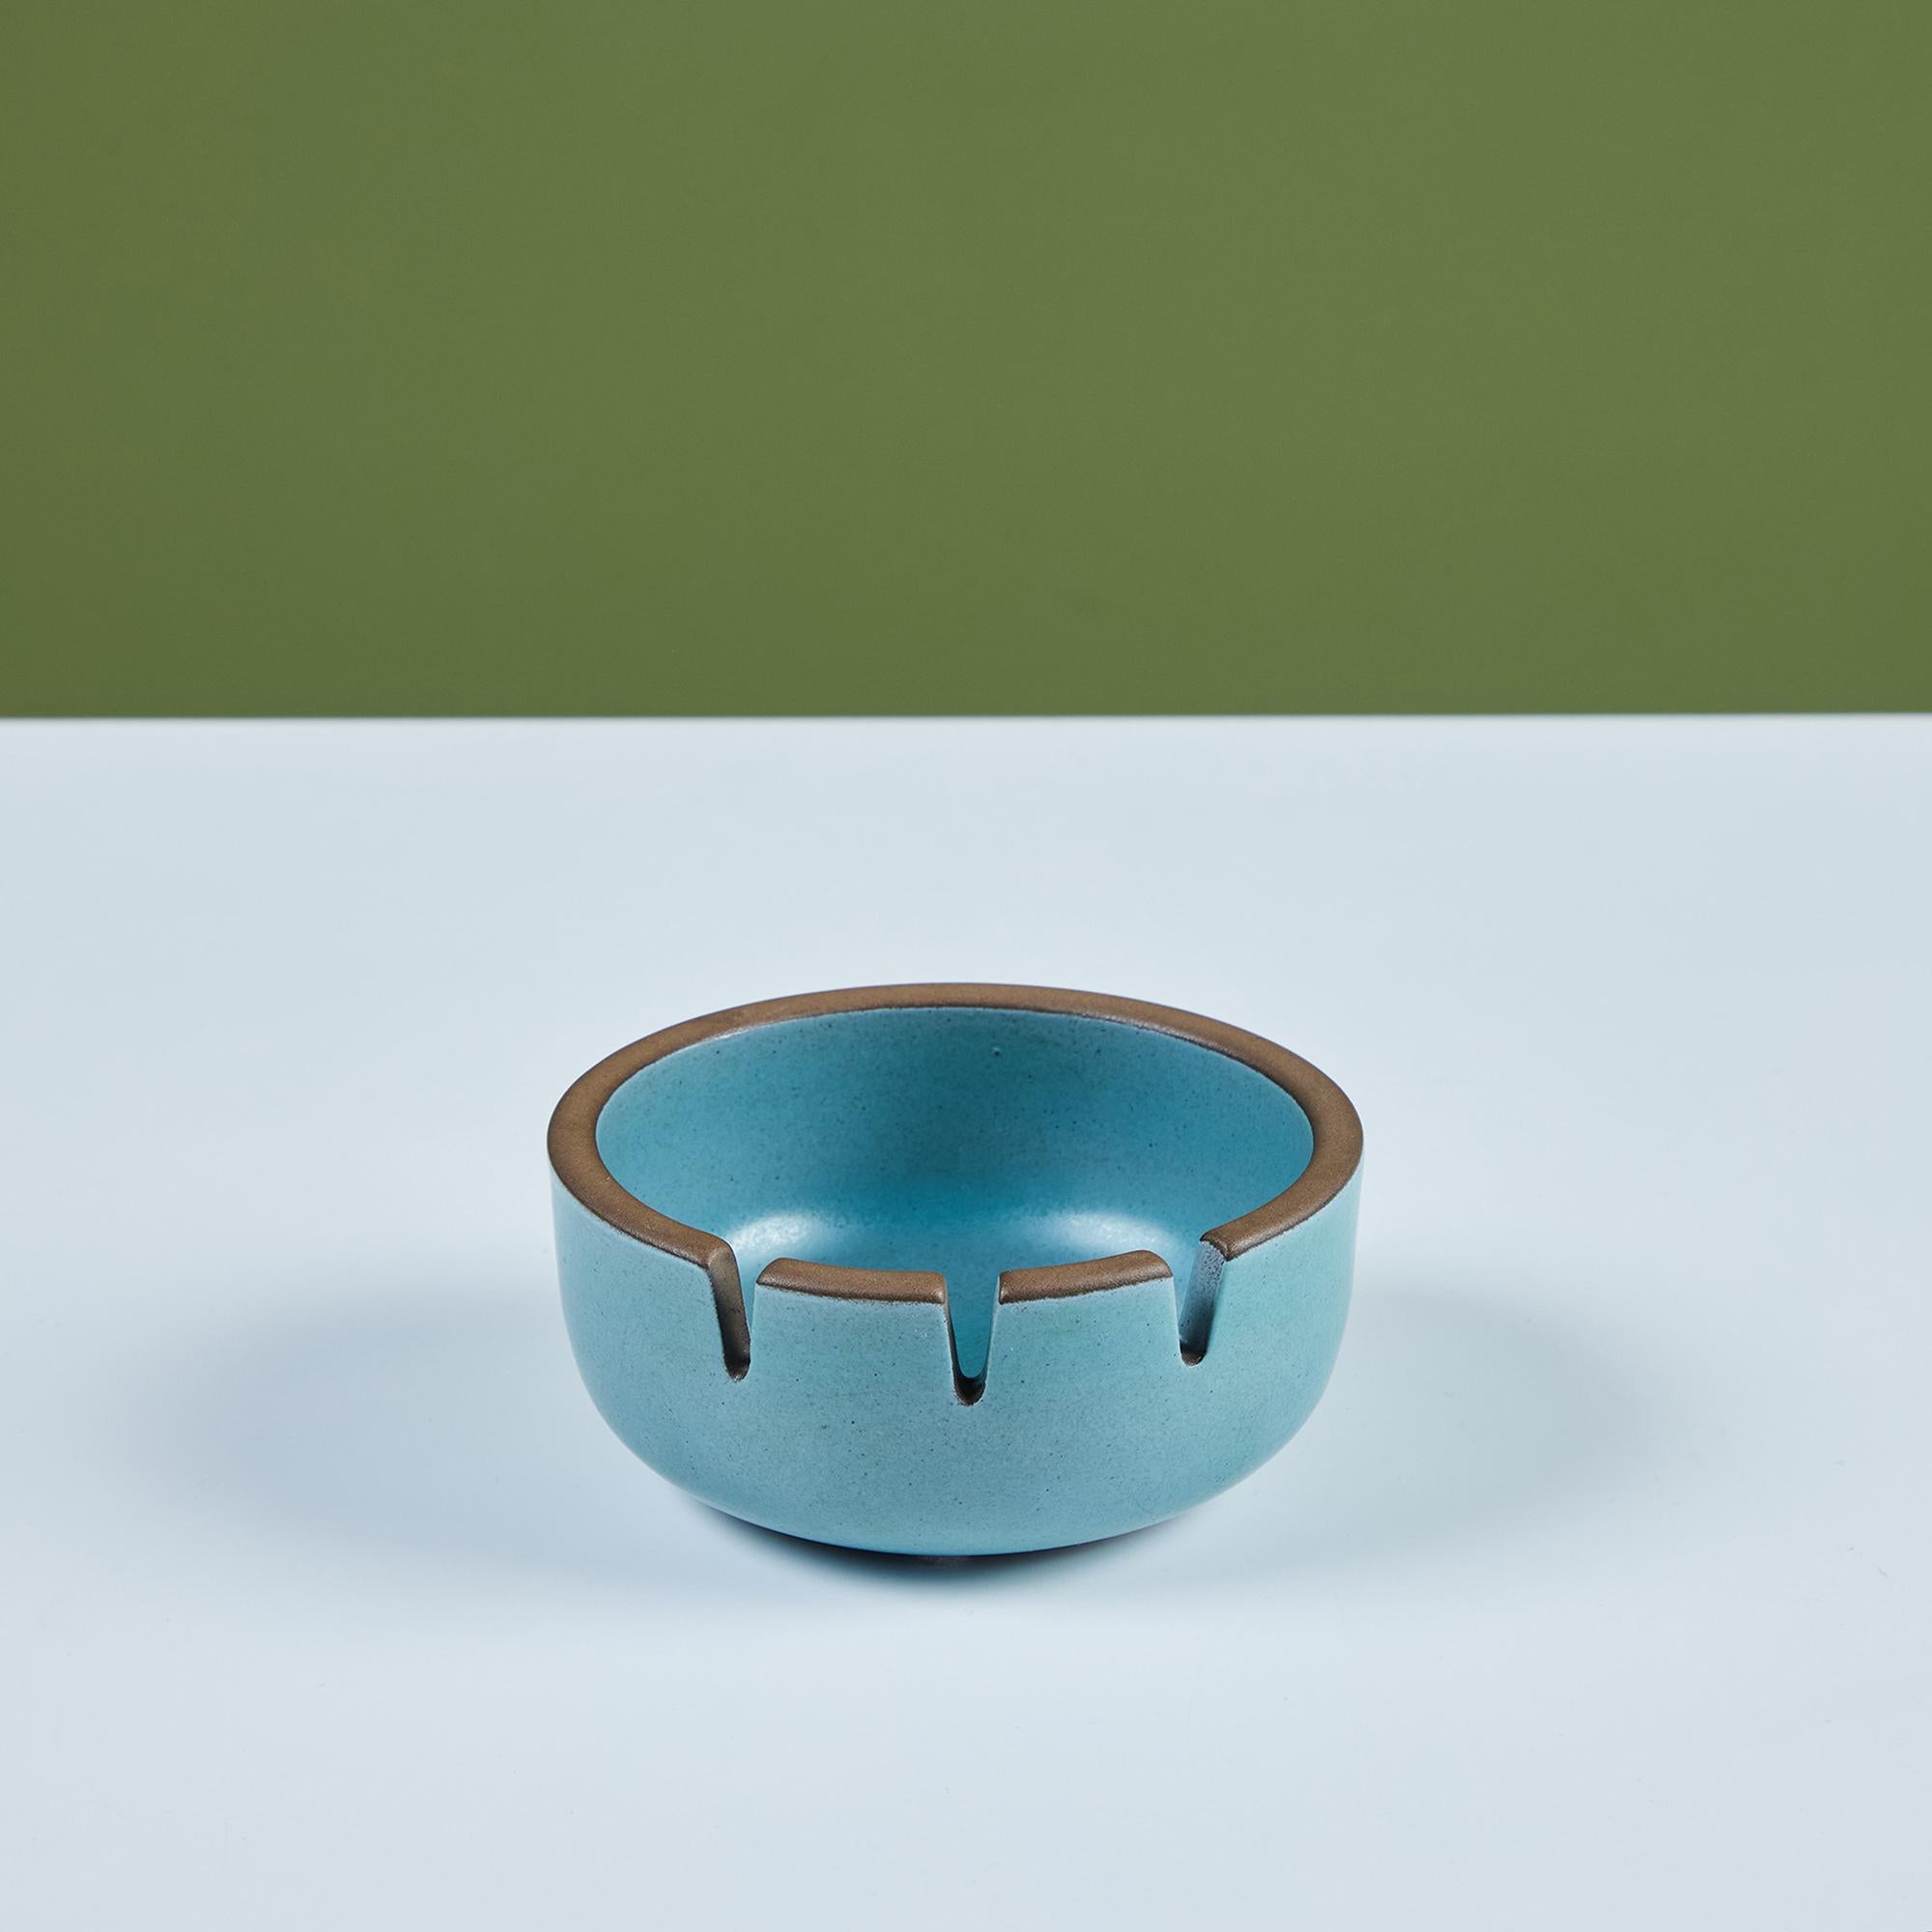 Aschenbecher aus glasierter Keramik von Heath Ceramics, ca. 1960er Jahre, USA. Der Aschenbecher hat eine blaue Außen- und Innenglasur. Es gibt drei Steckplätze für Zigaretten. Can auch als dekorative Ablage oder Seifenschale verwendet werden.
Auf